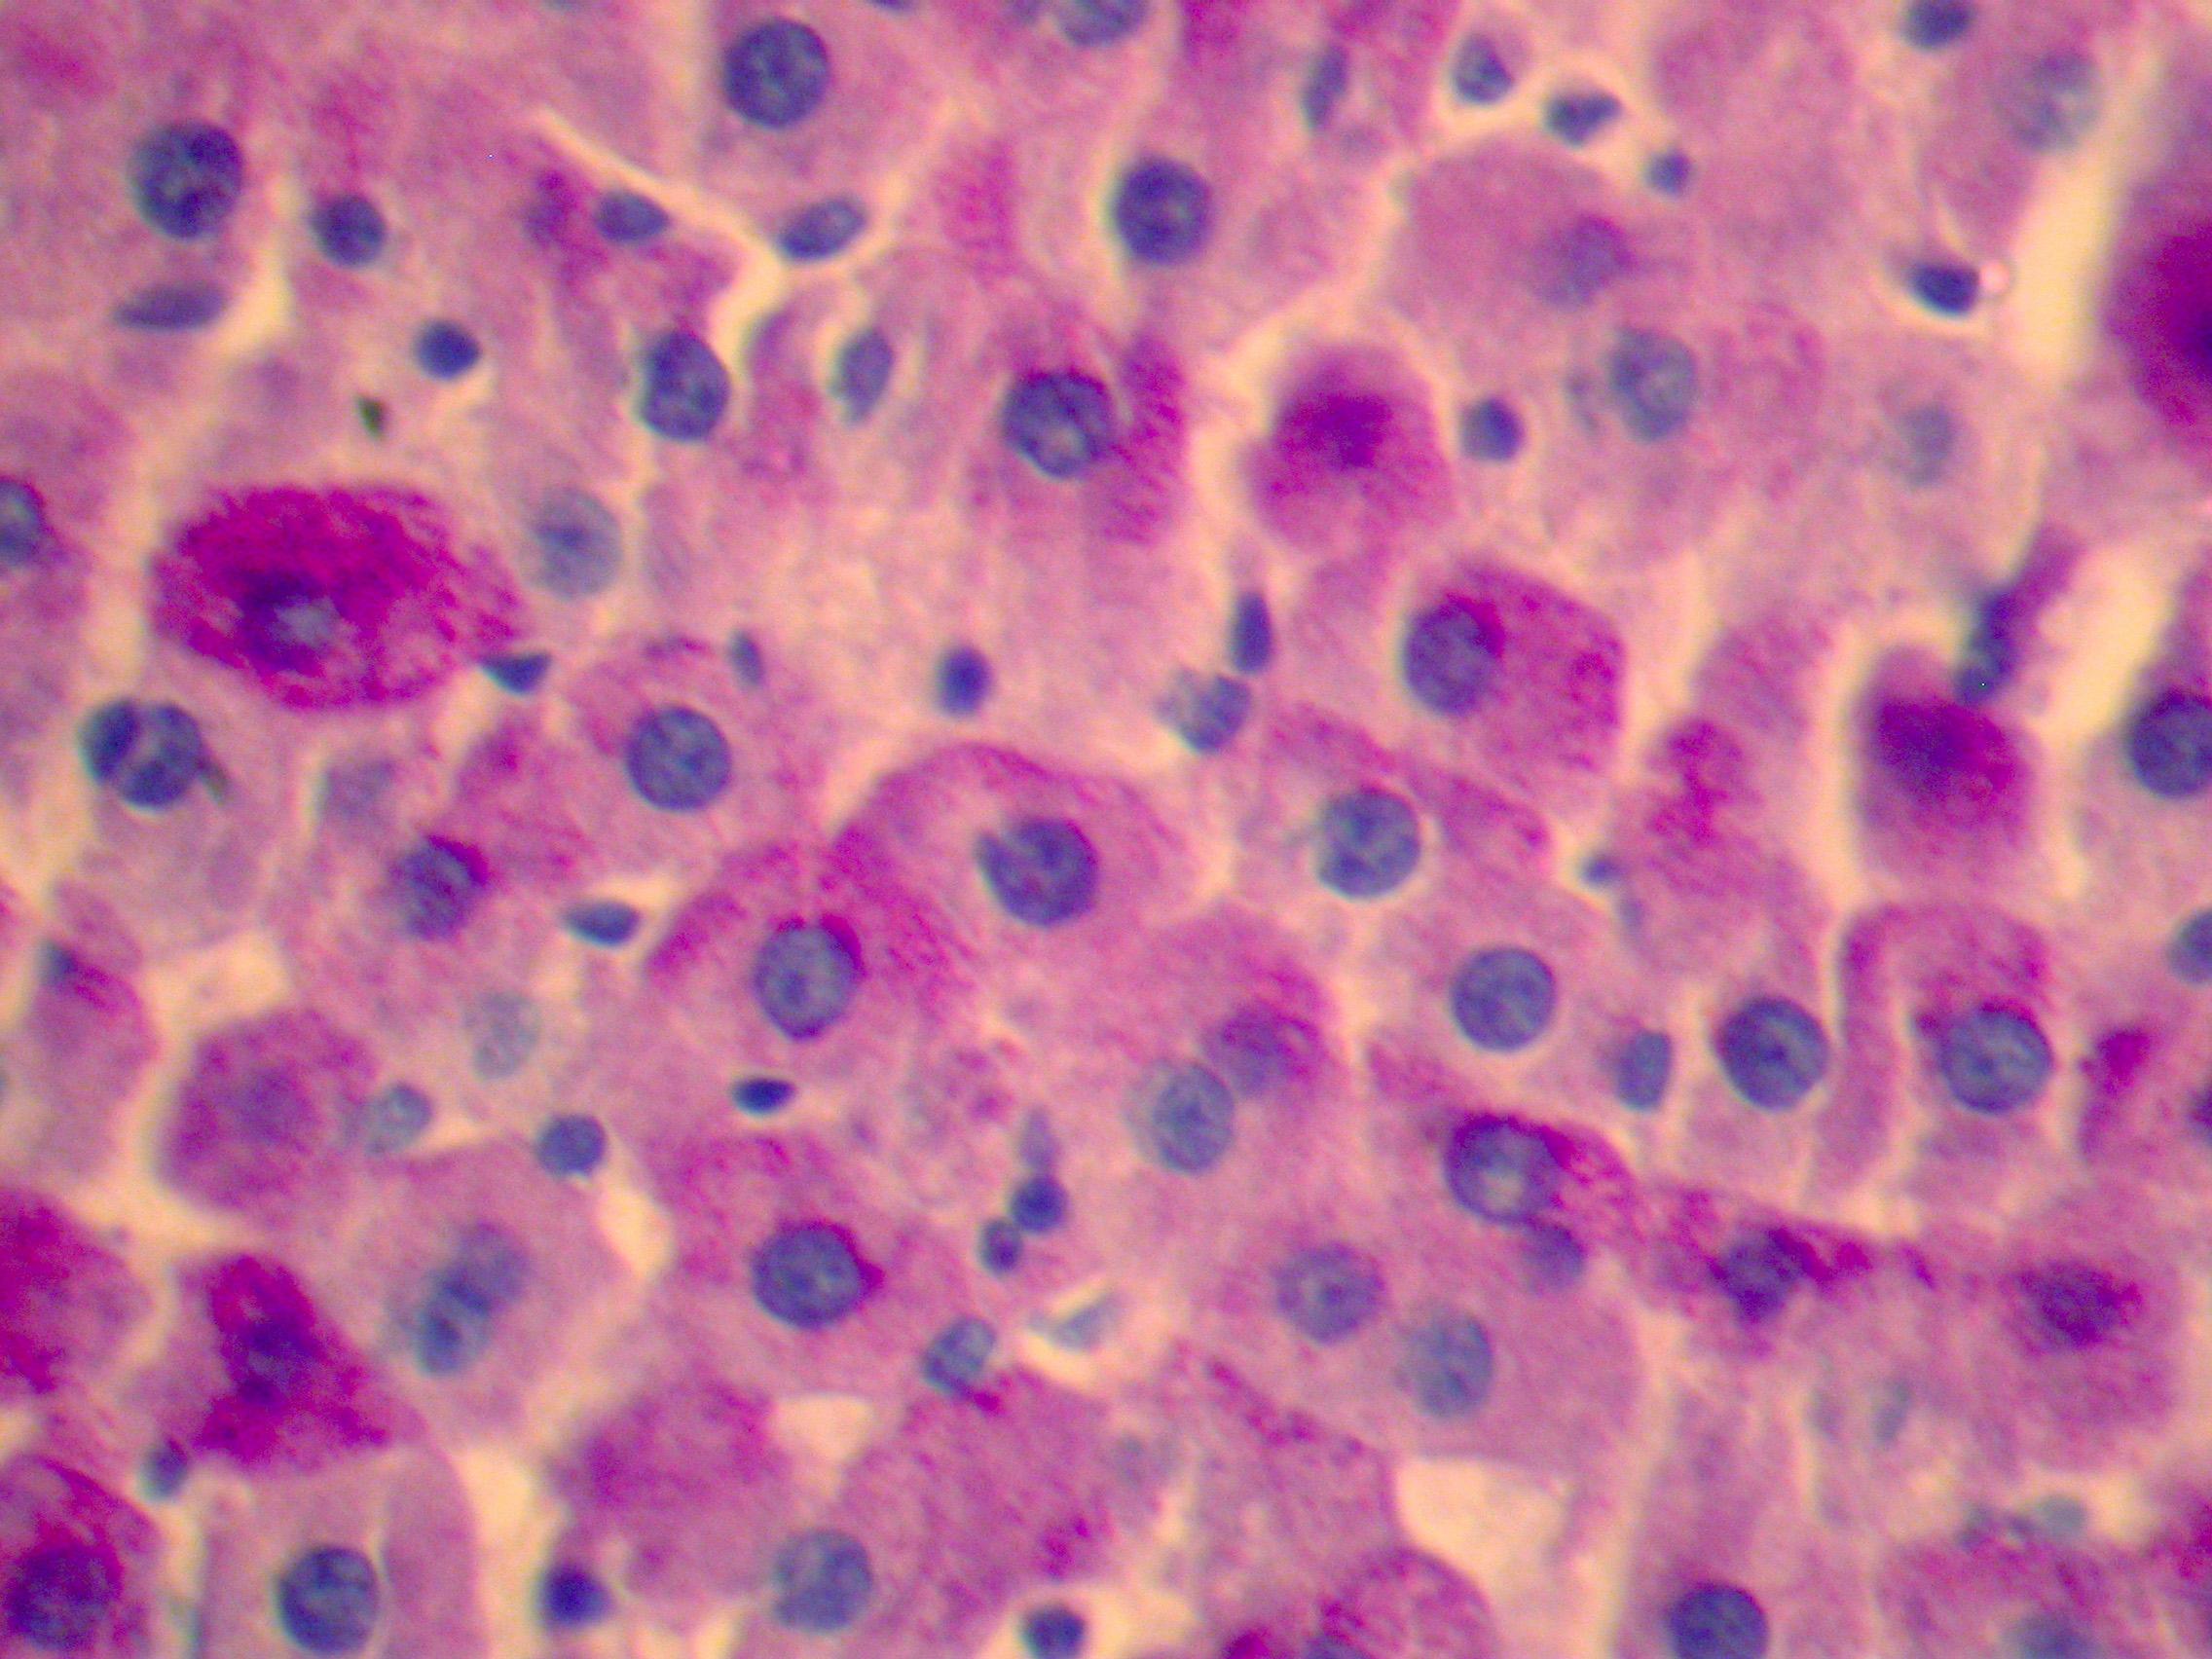 Иммунные клетки печени. Включения гликогена в печени аксолотля. Включения гликогена в клетках печени. Включения гликогена в клетках печени аксолотля. Включения гликогена в клетках печени аксолотля под микроскопом.